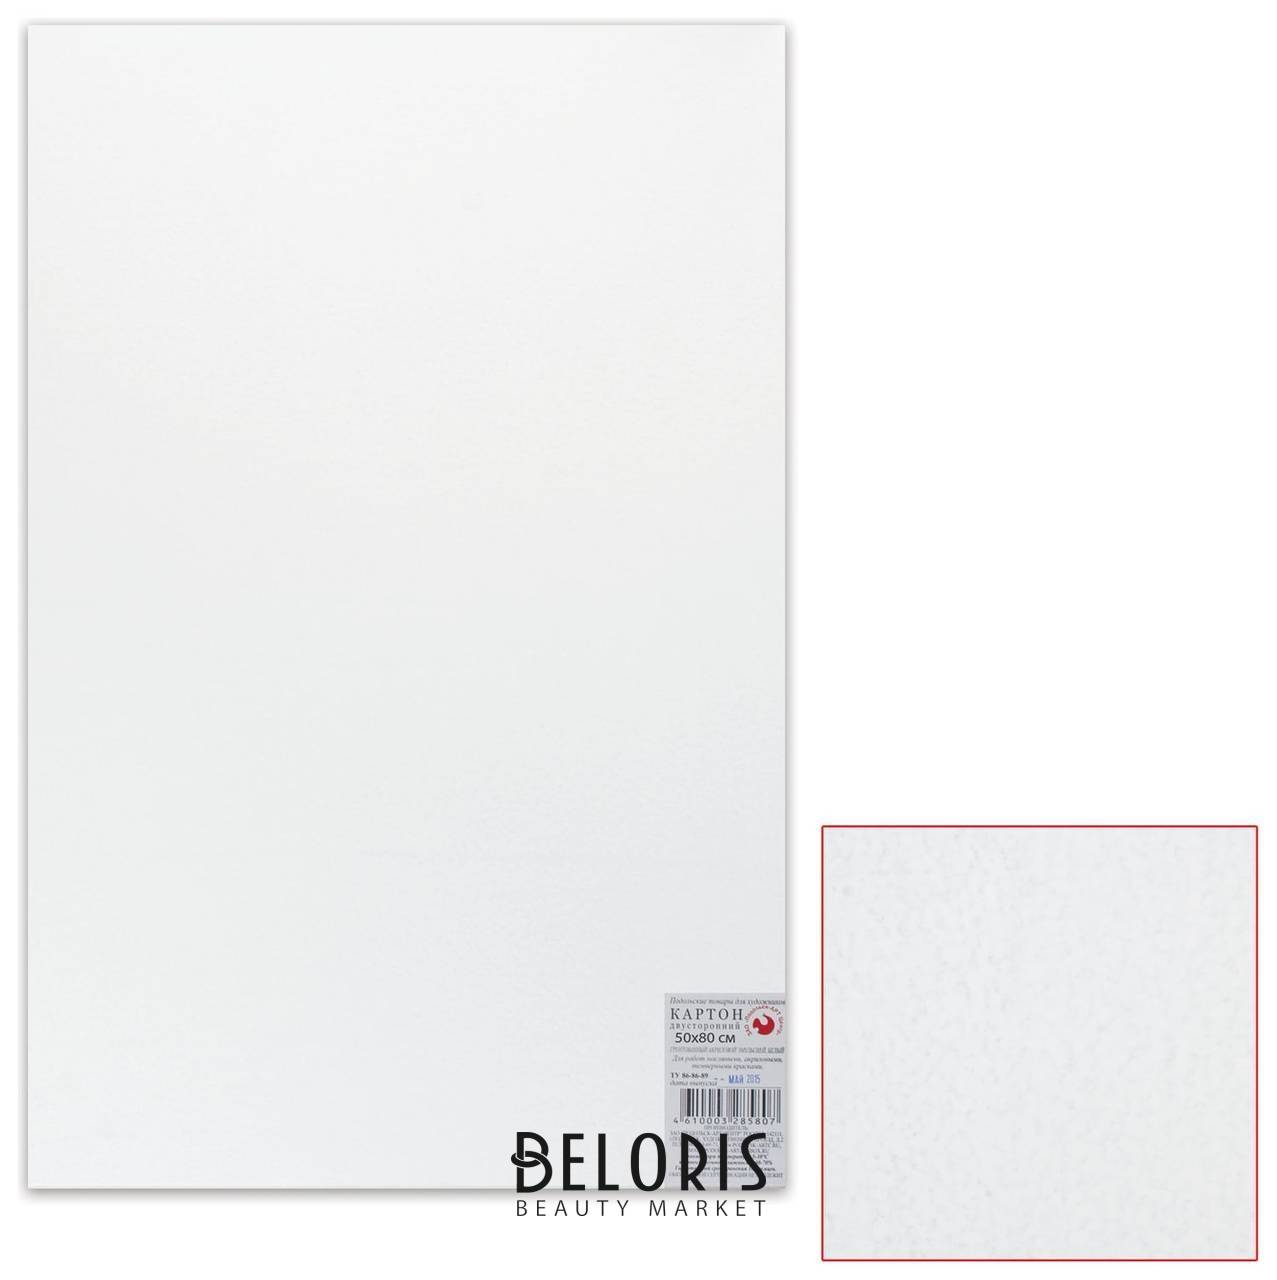 Картон белый грунтованный для живописи, 50х80 см, двусторонний, толщина 2 мм, акриловый грунт Подольские товары для художников